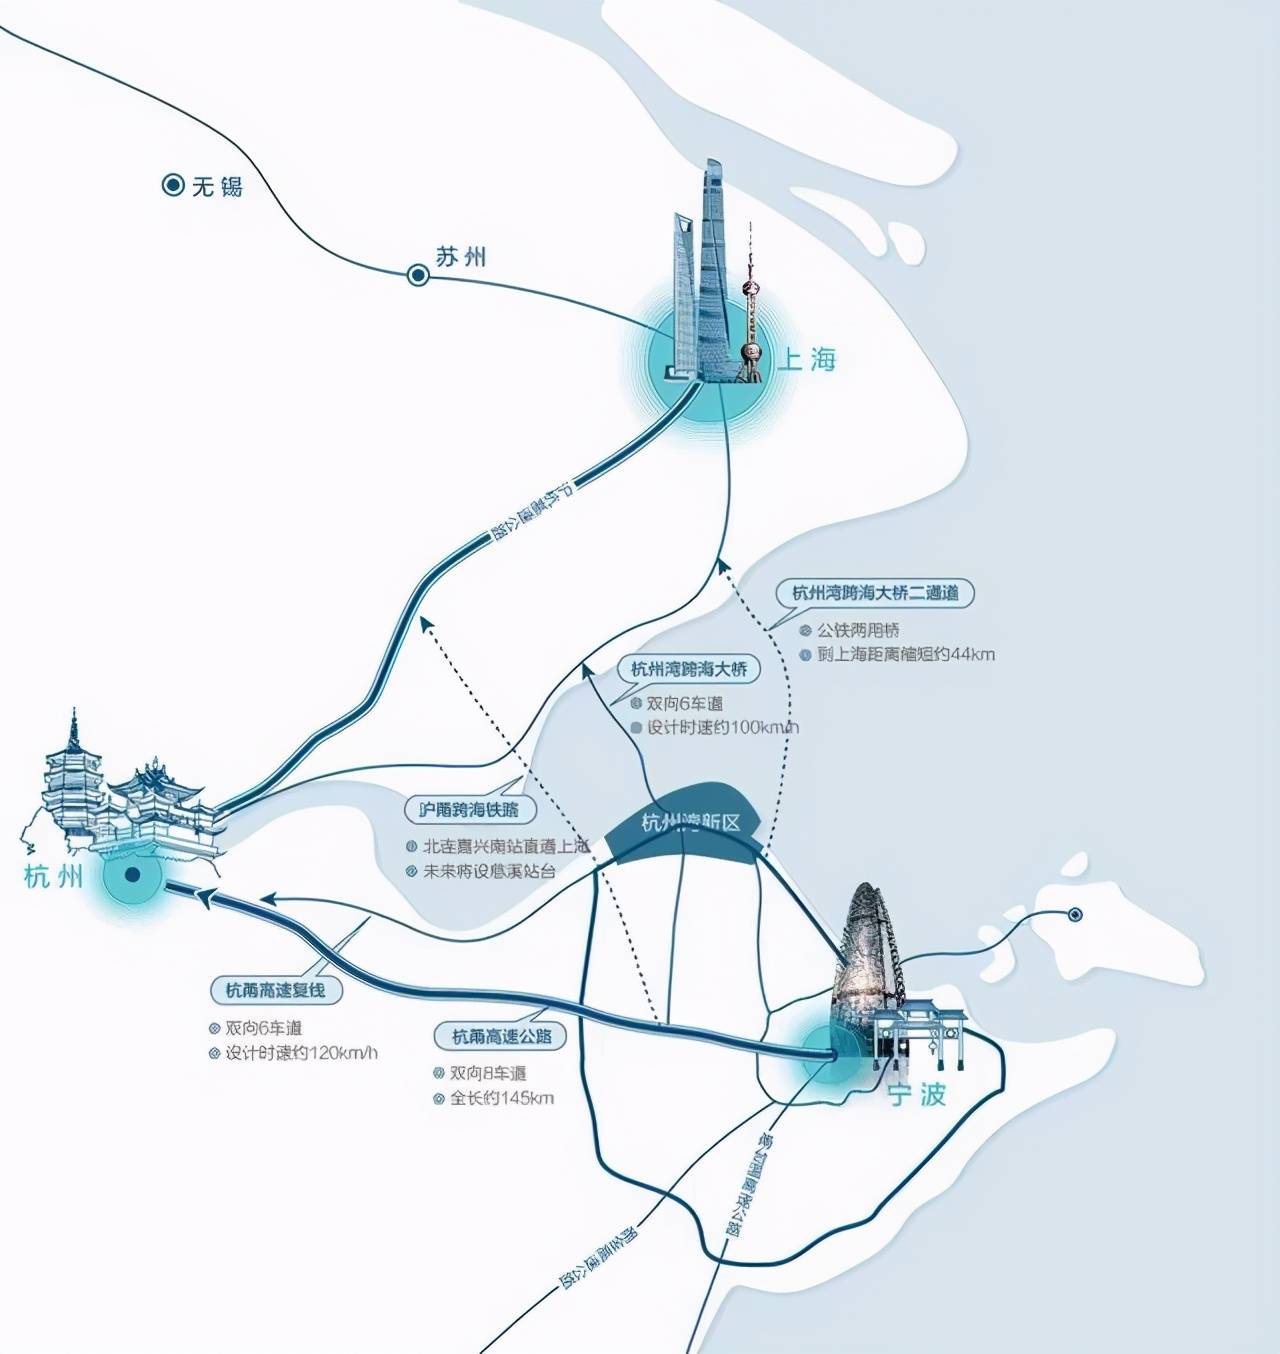 杭州湾新区为何是中国长三角经济圈中最具发展潜力的区域?